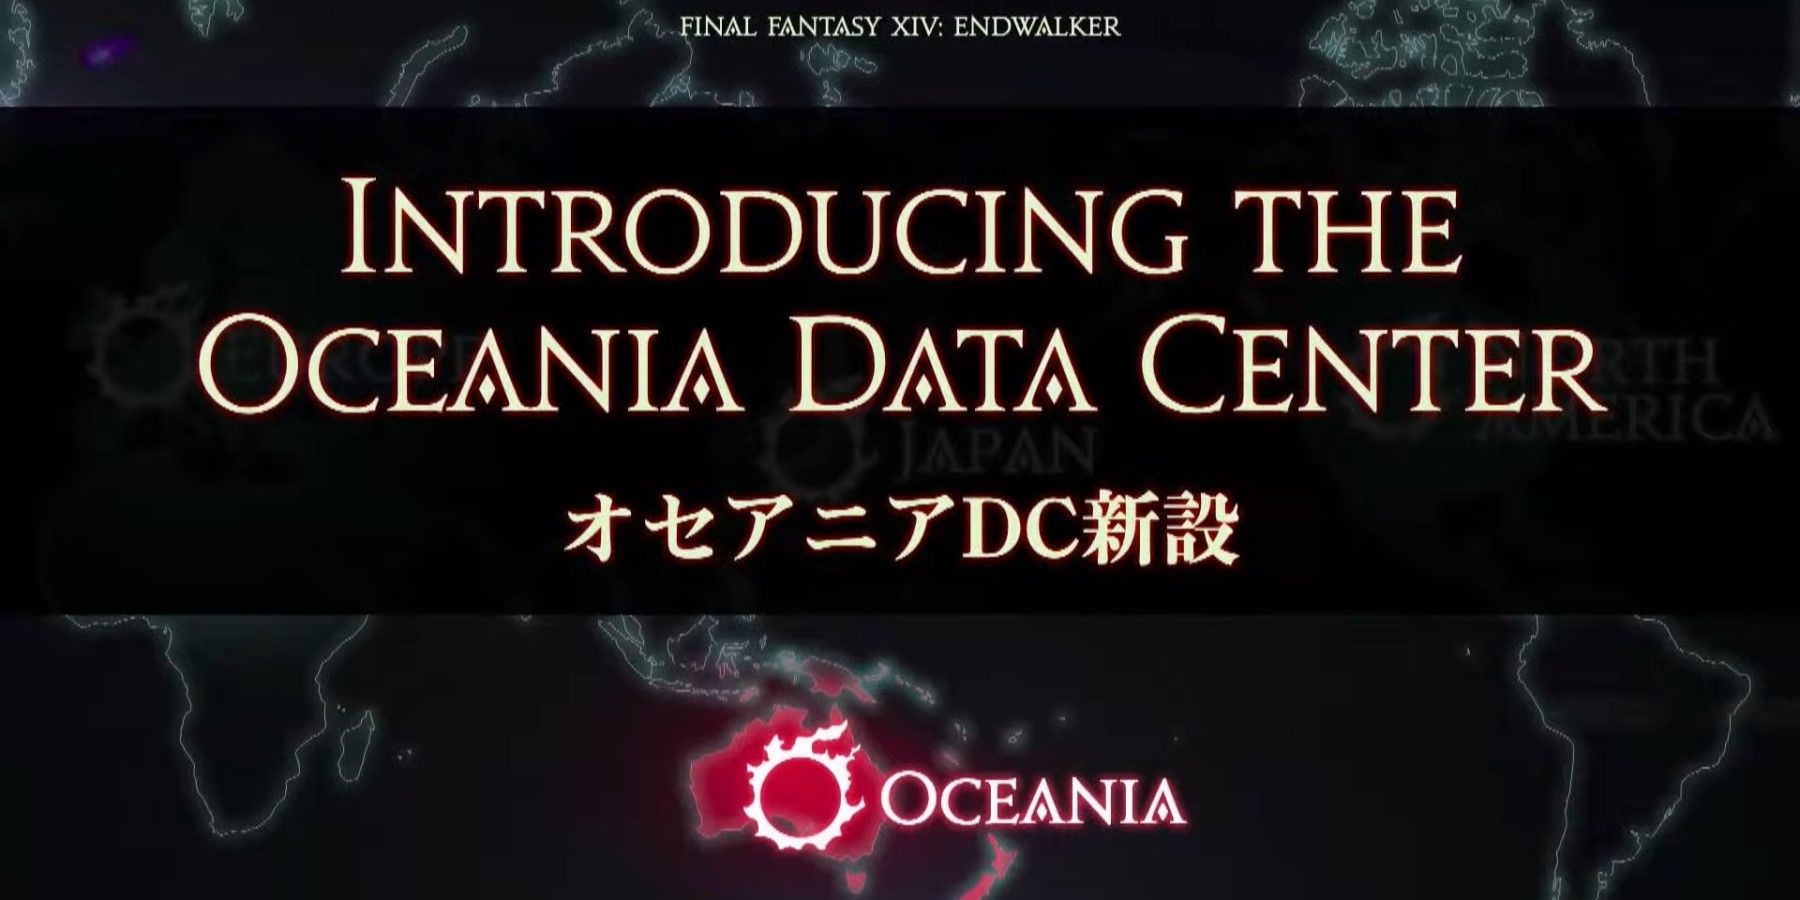 ffxiv oceania data center opening